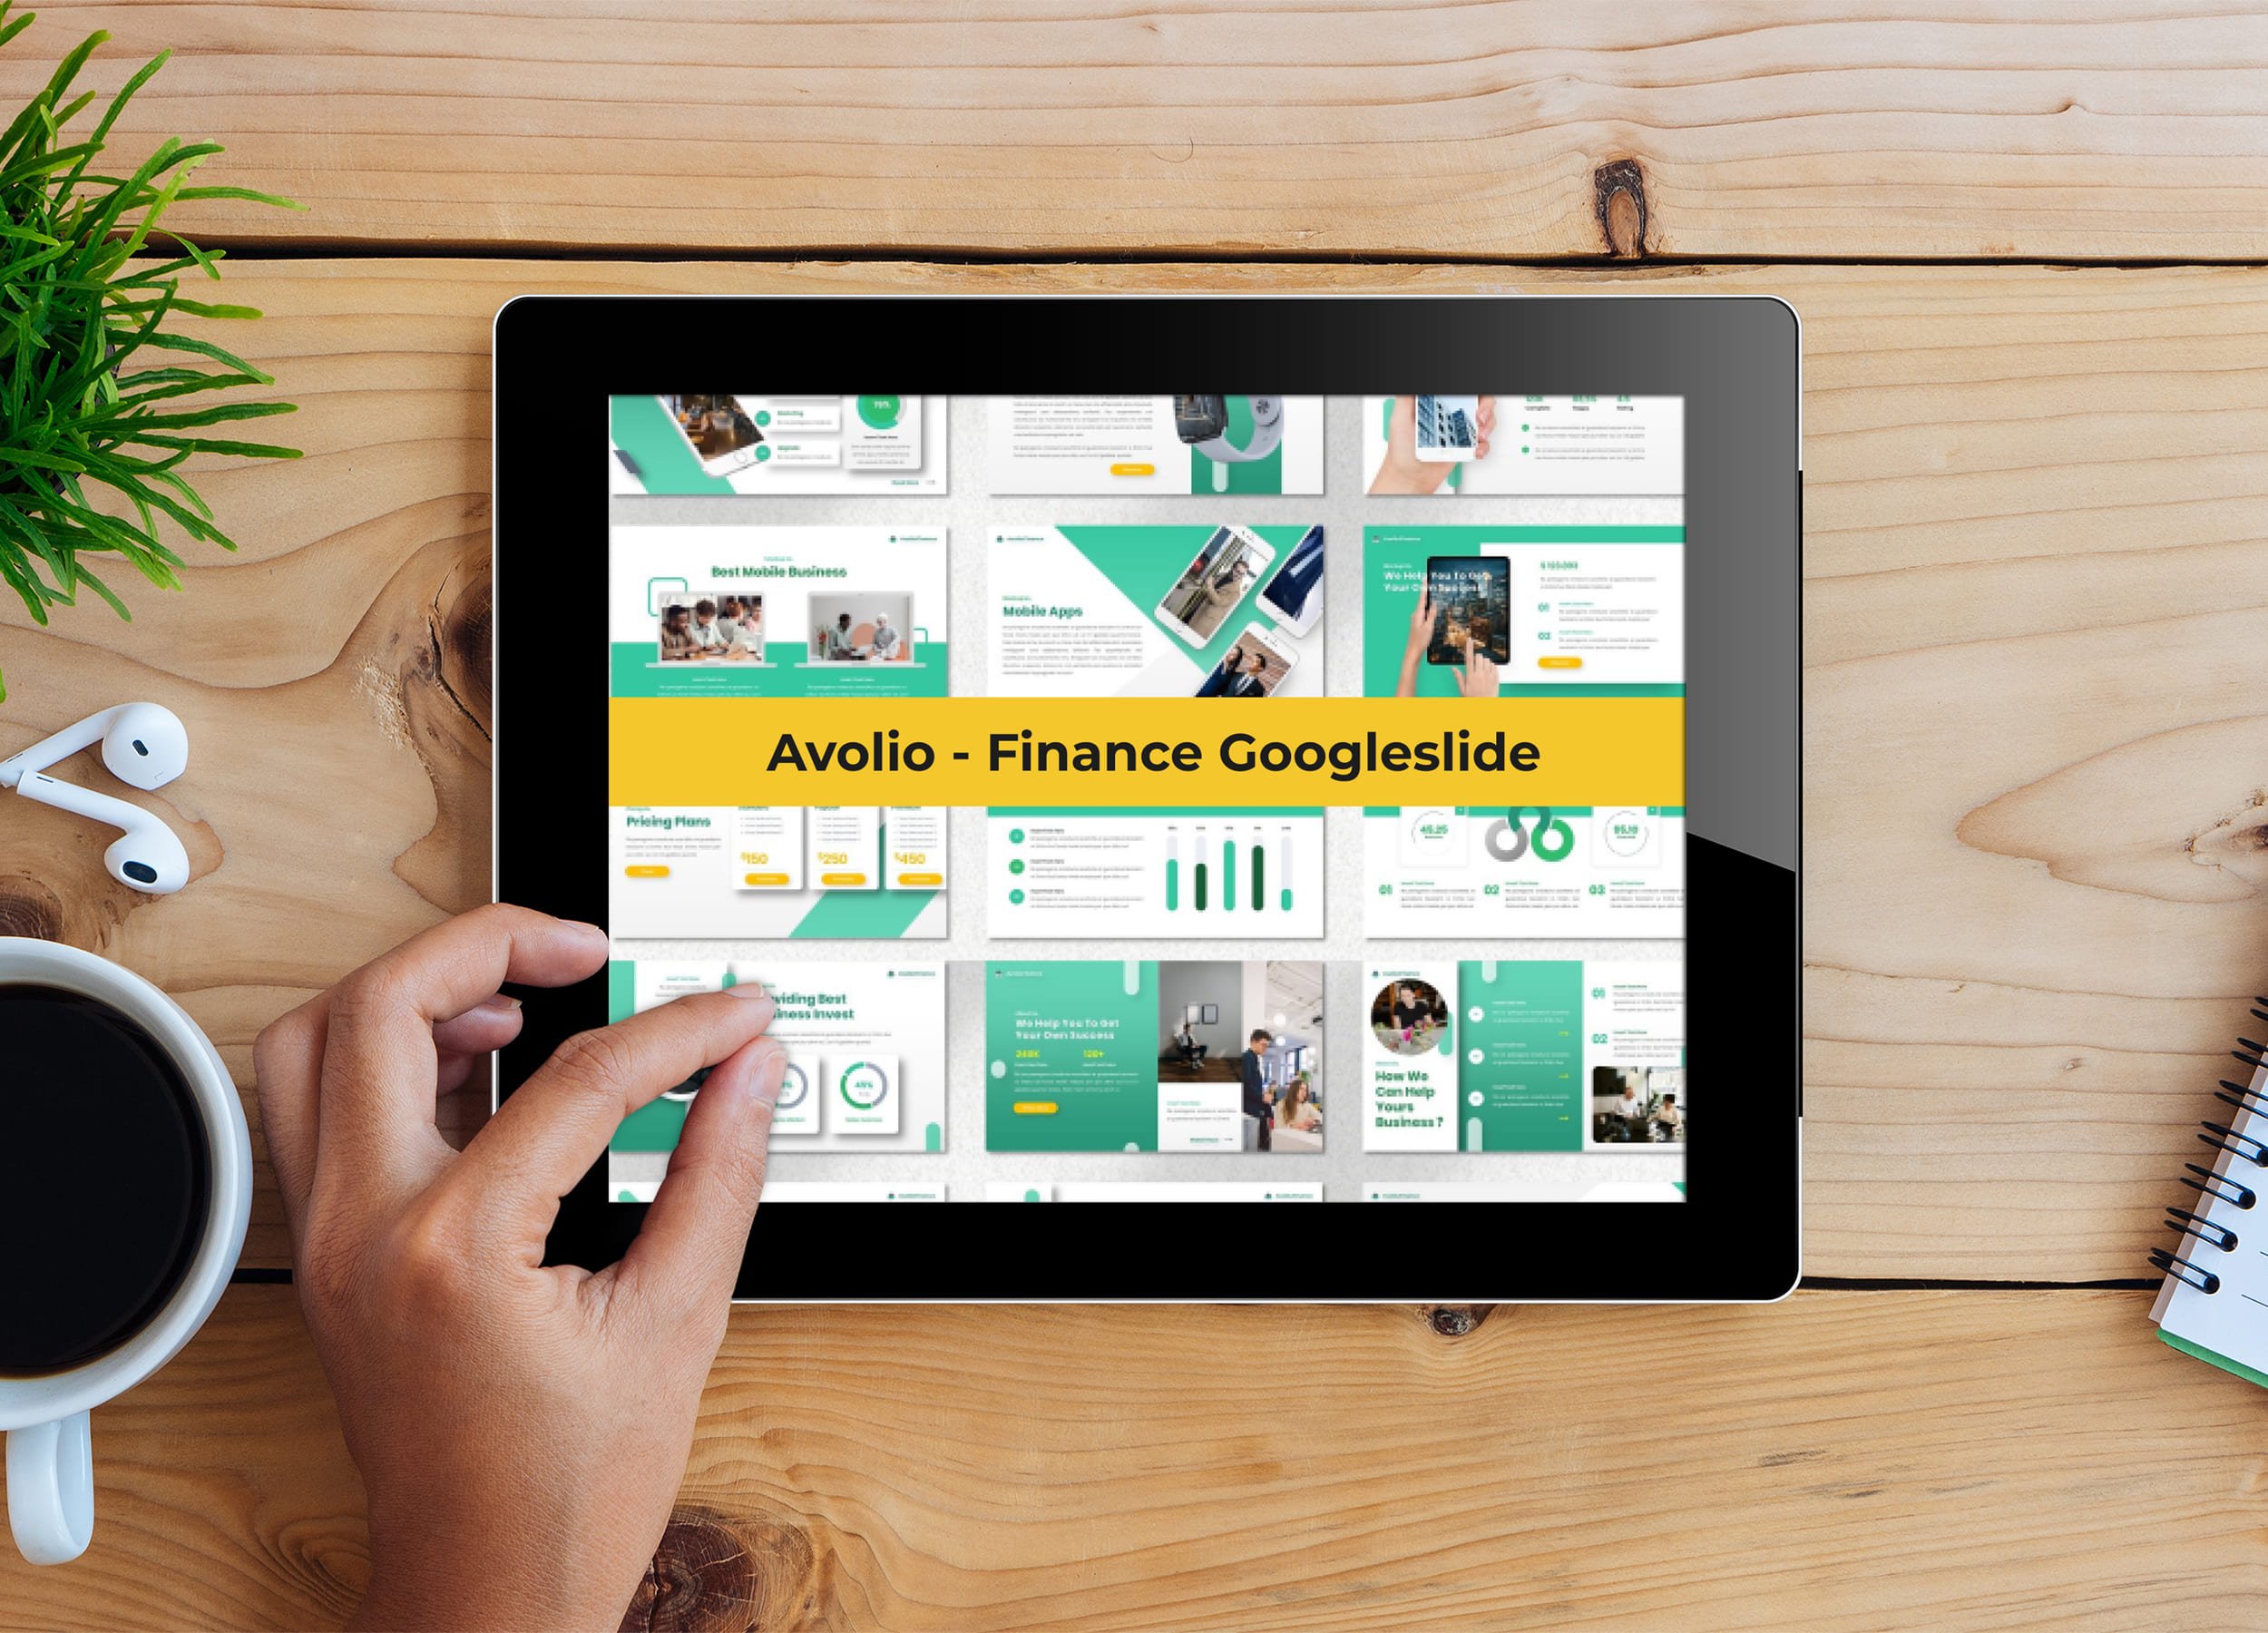 Tablet option of the Avolio - Finance Googleslide.